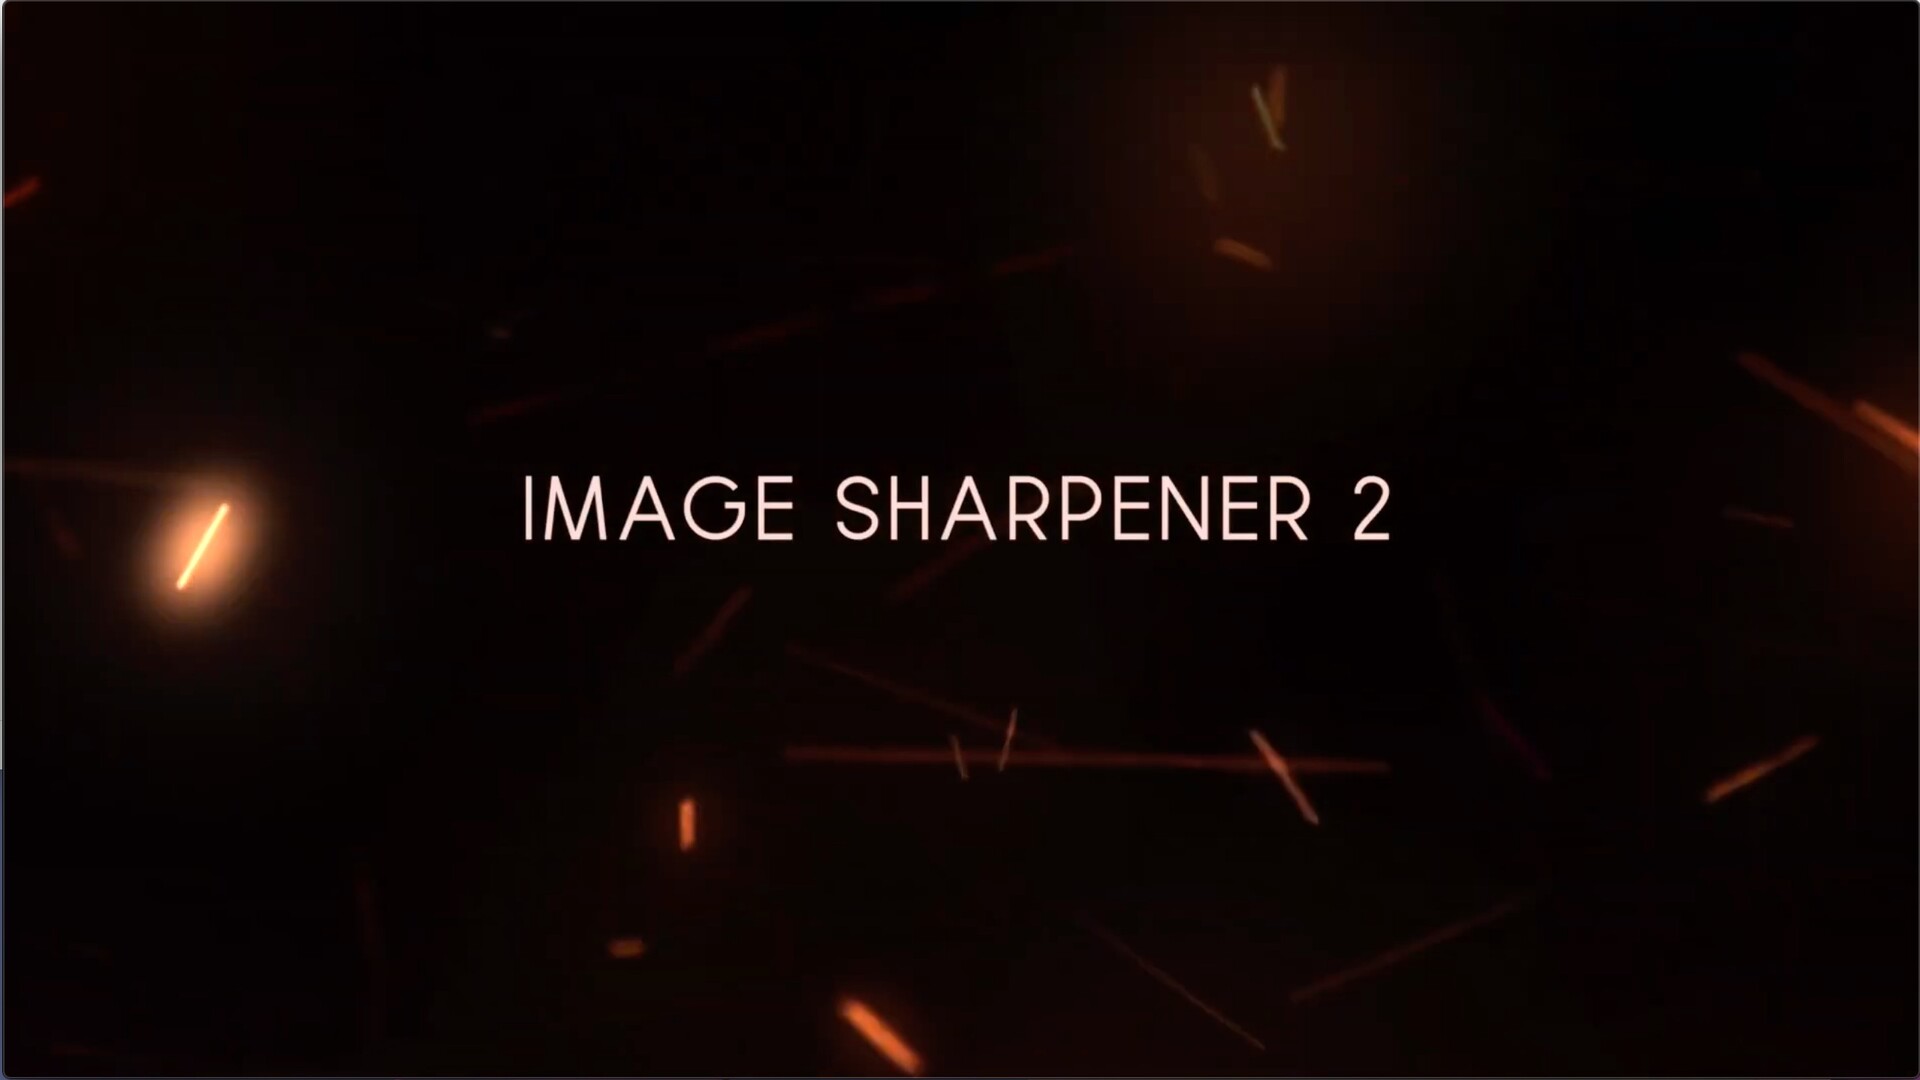 fcpx插件: 图像锐化器 Image Sharpener